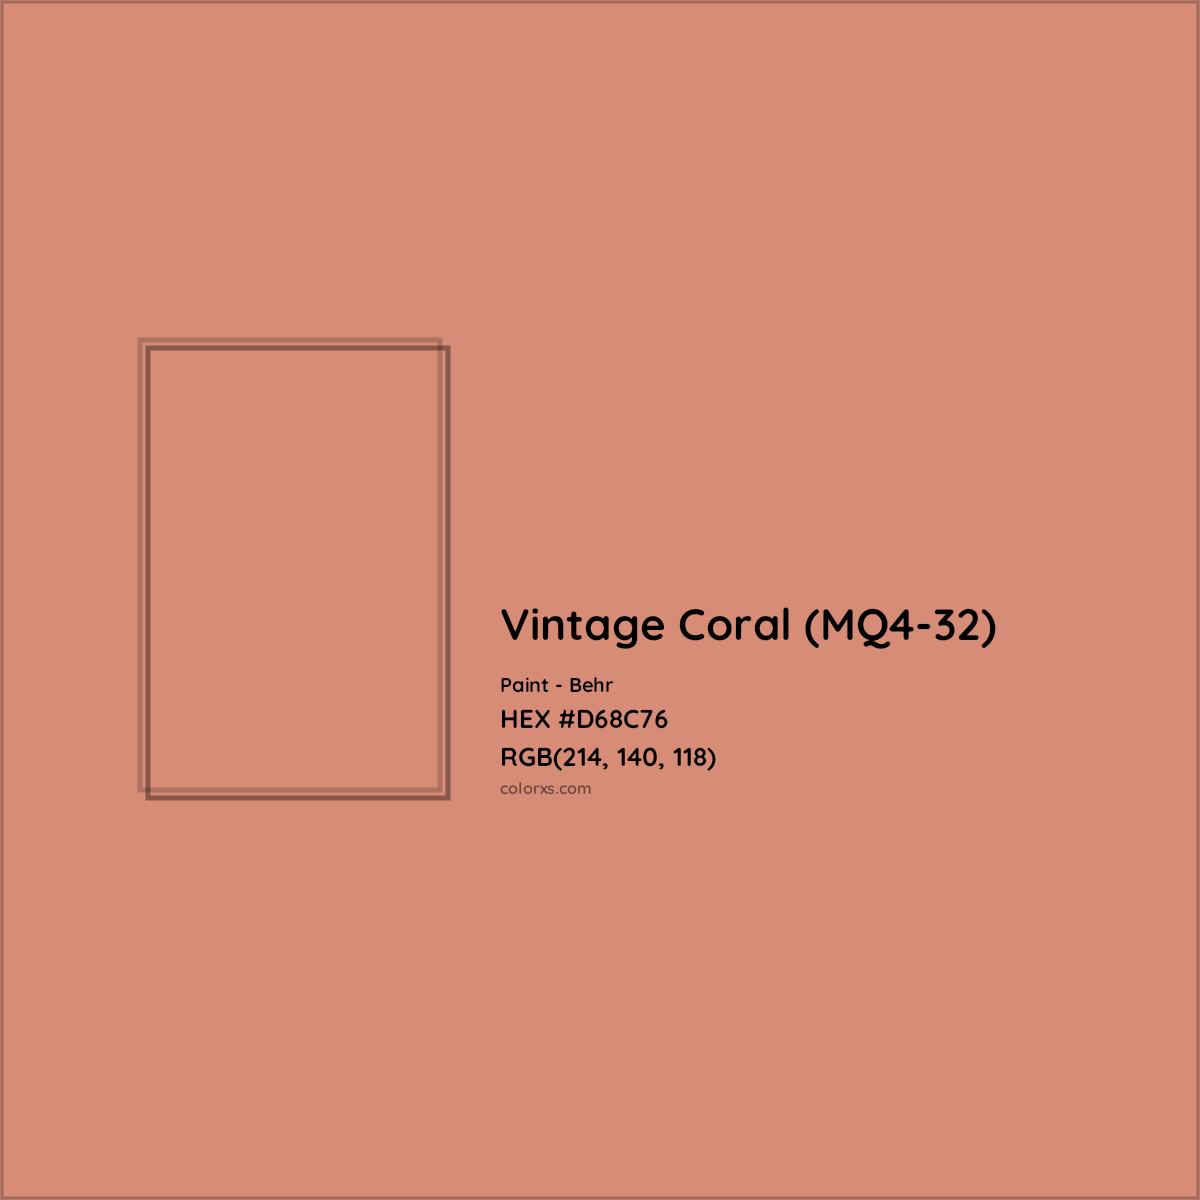 HEX #D68C76 Vintage Coral (MQ4-32) Paint Behr - Color Code